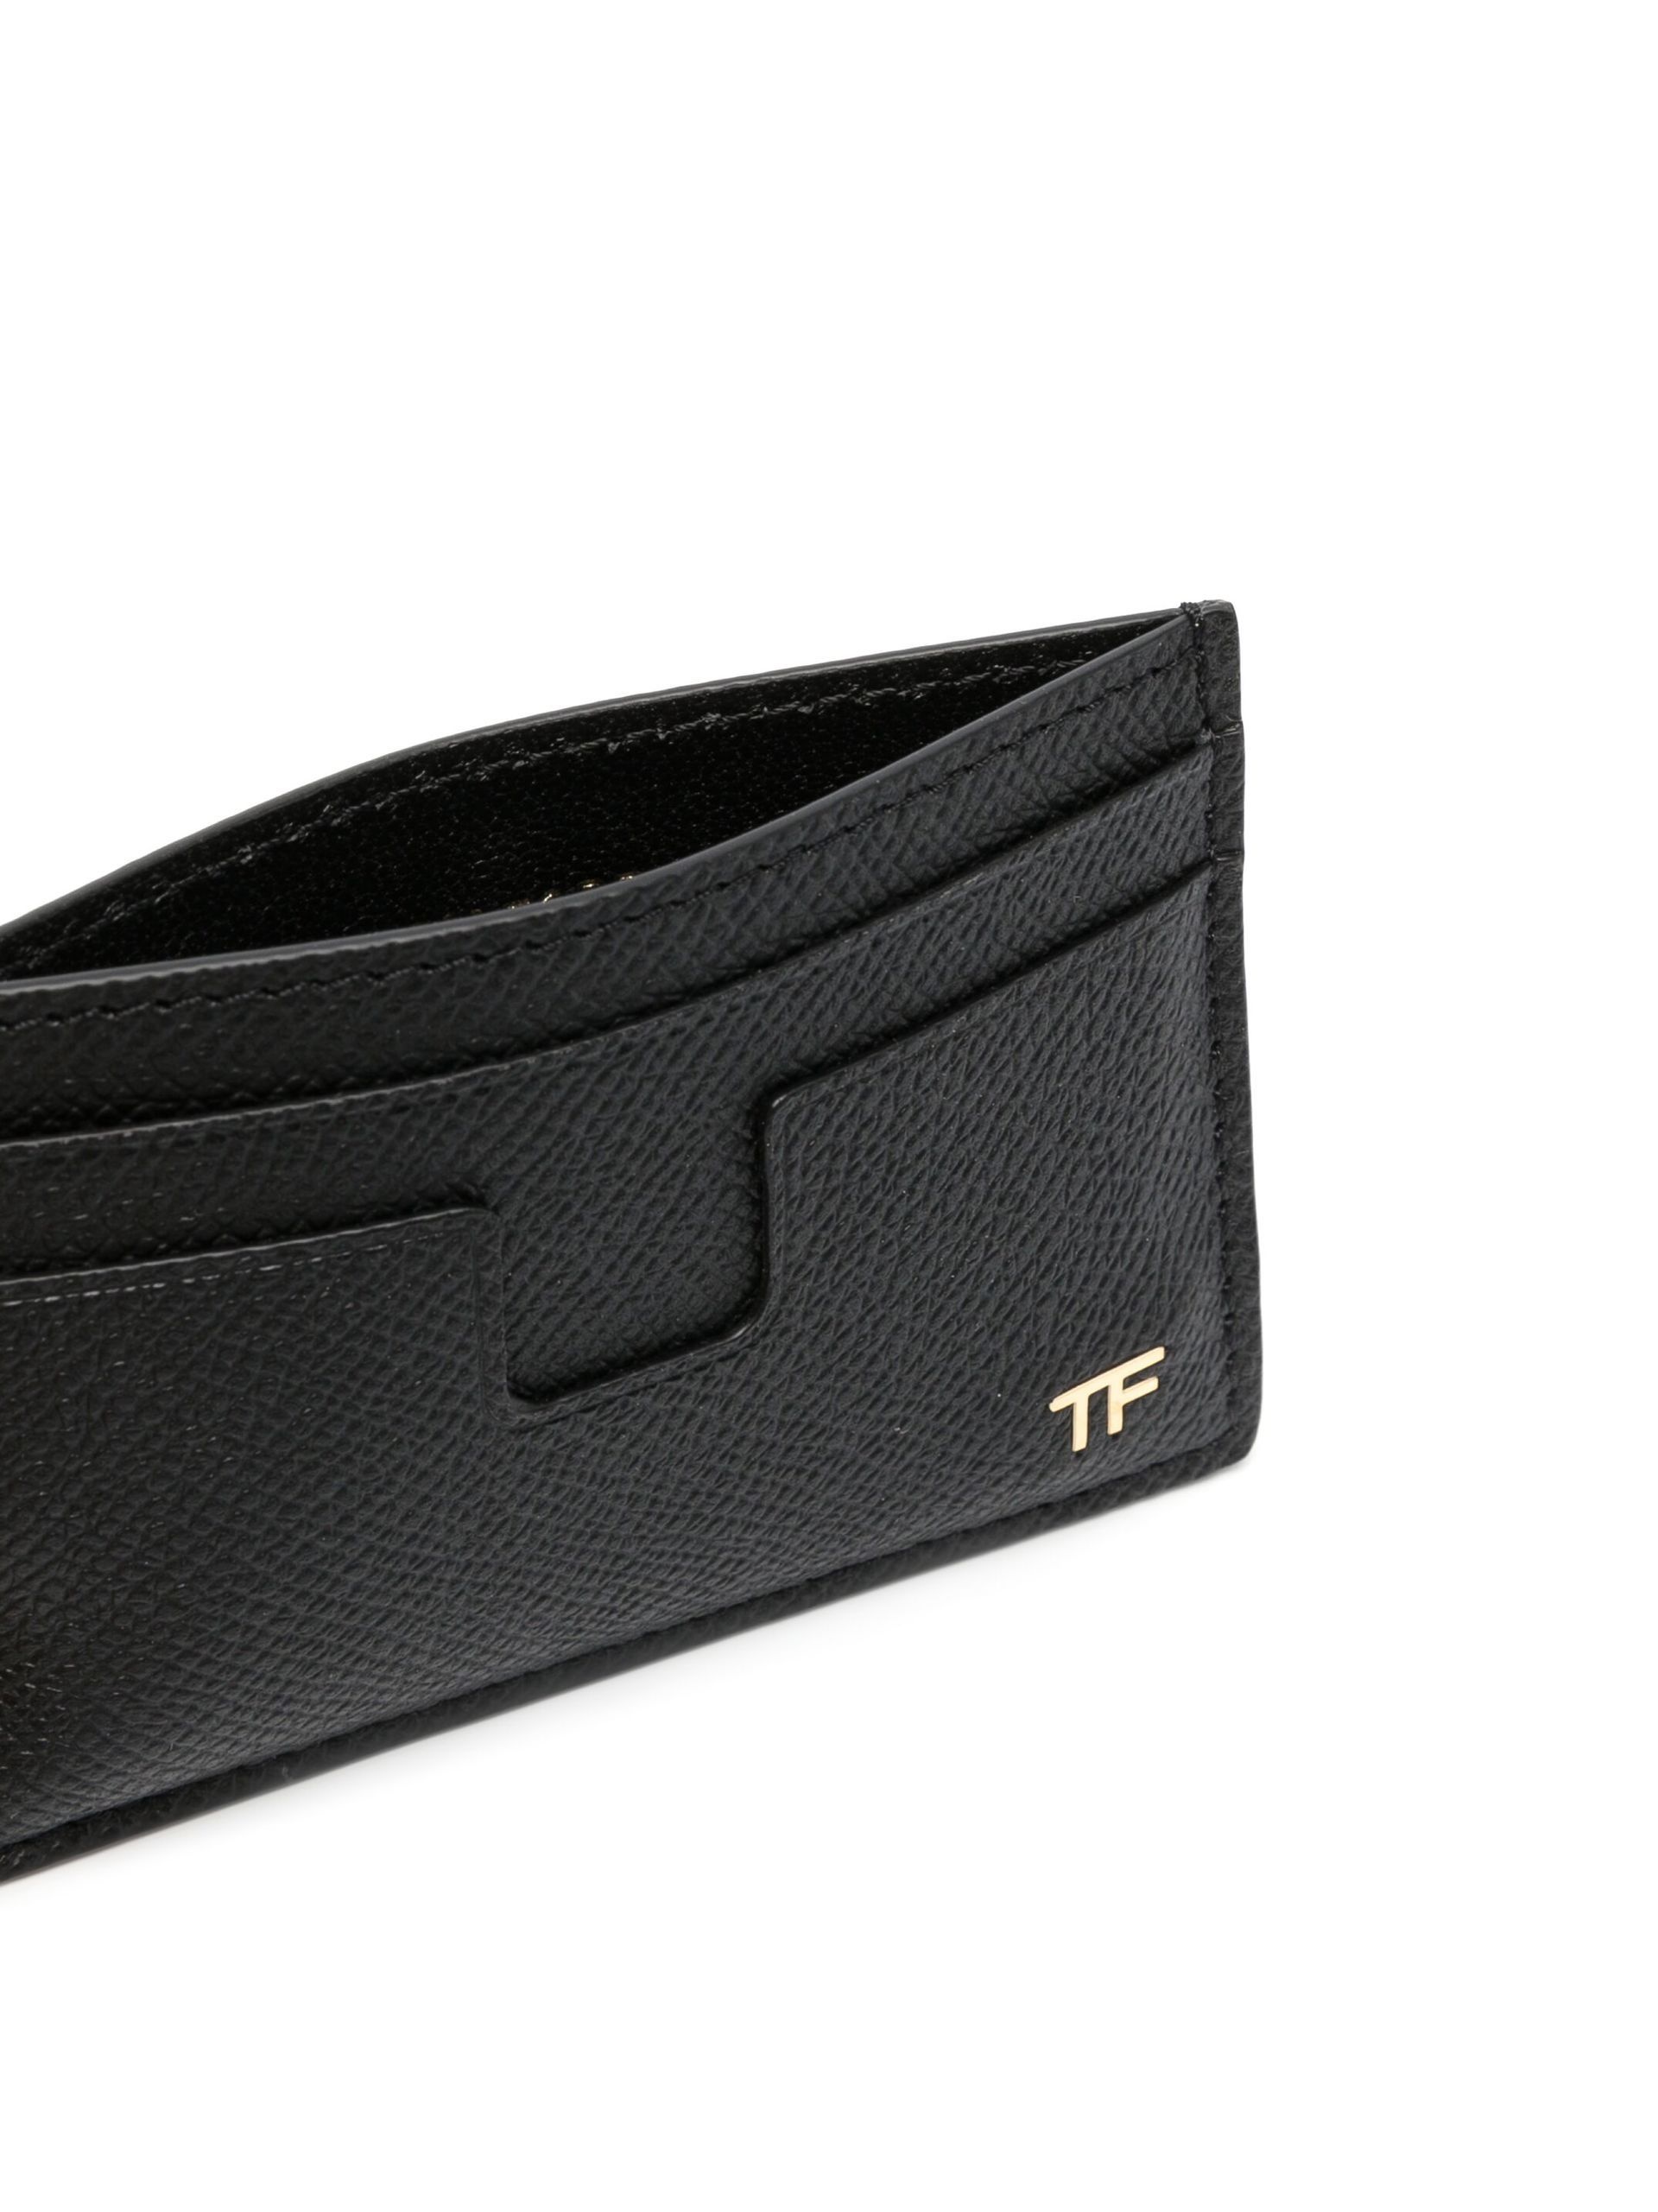 Black TF Leather Cardholder - 3